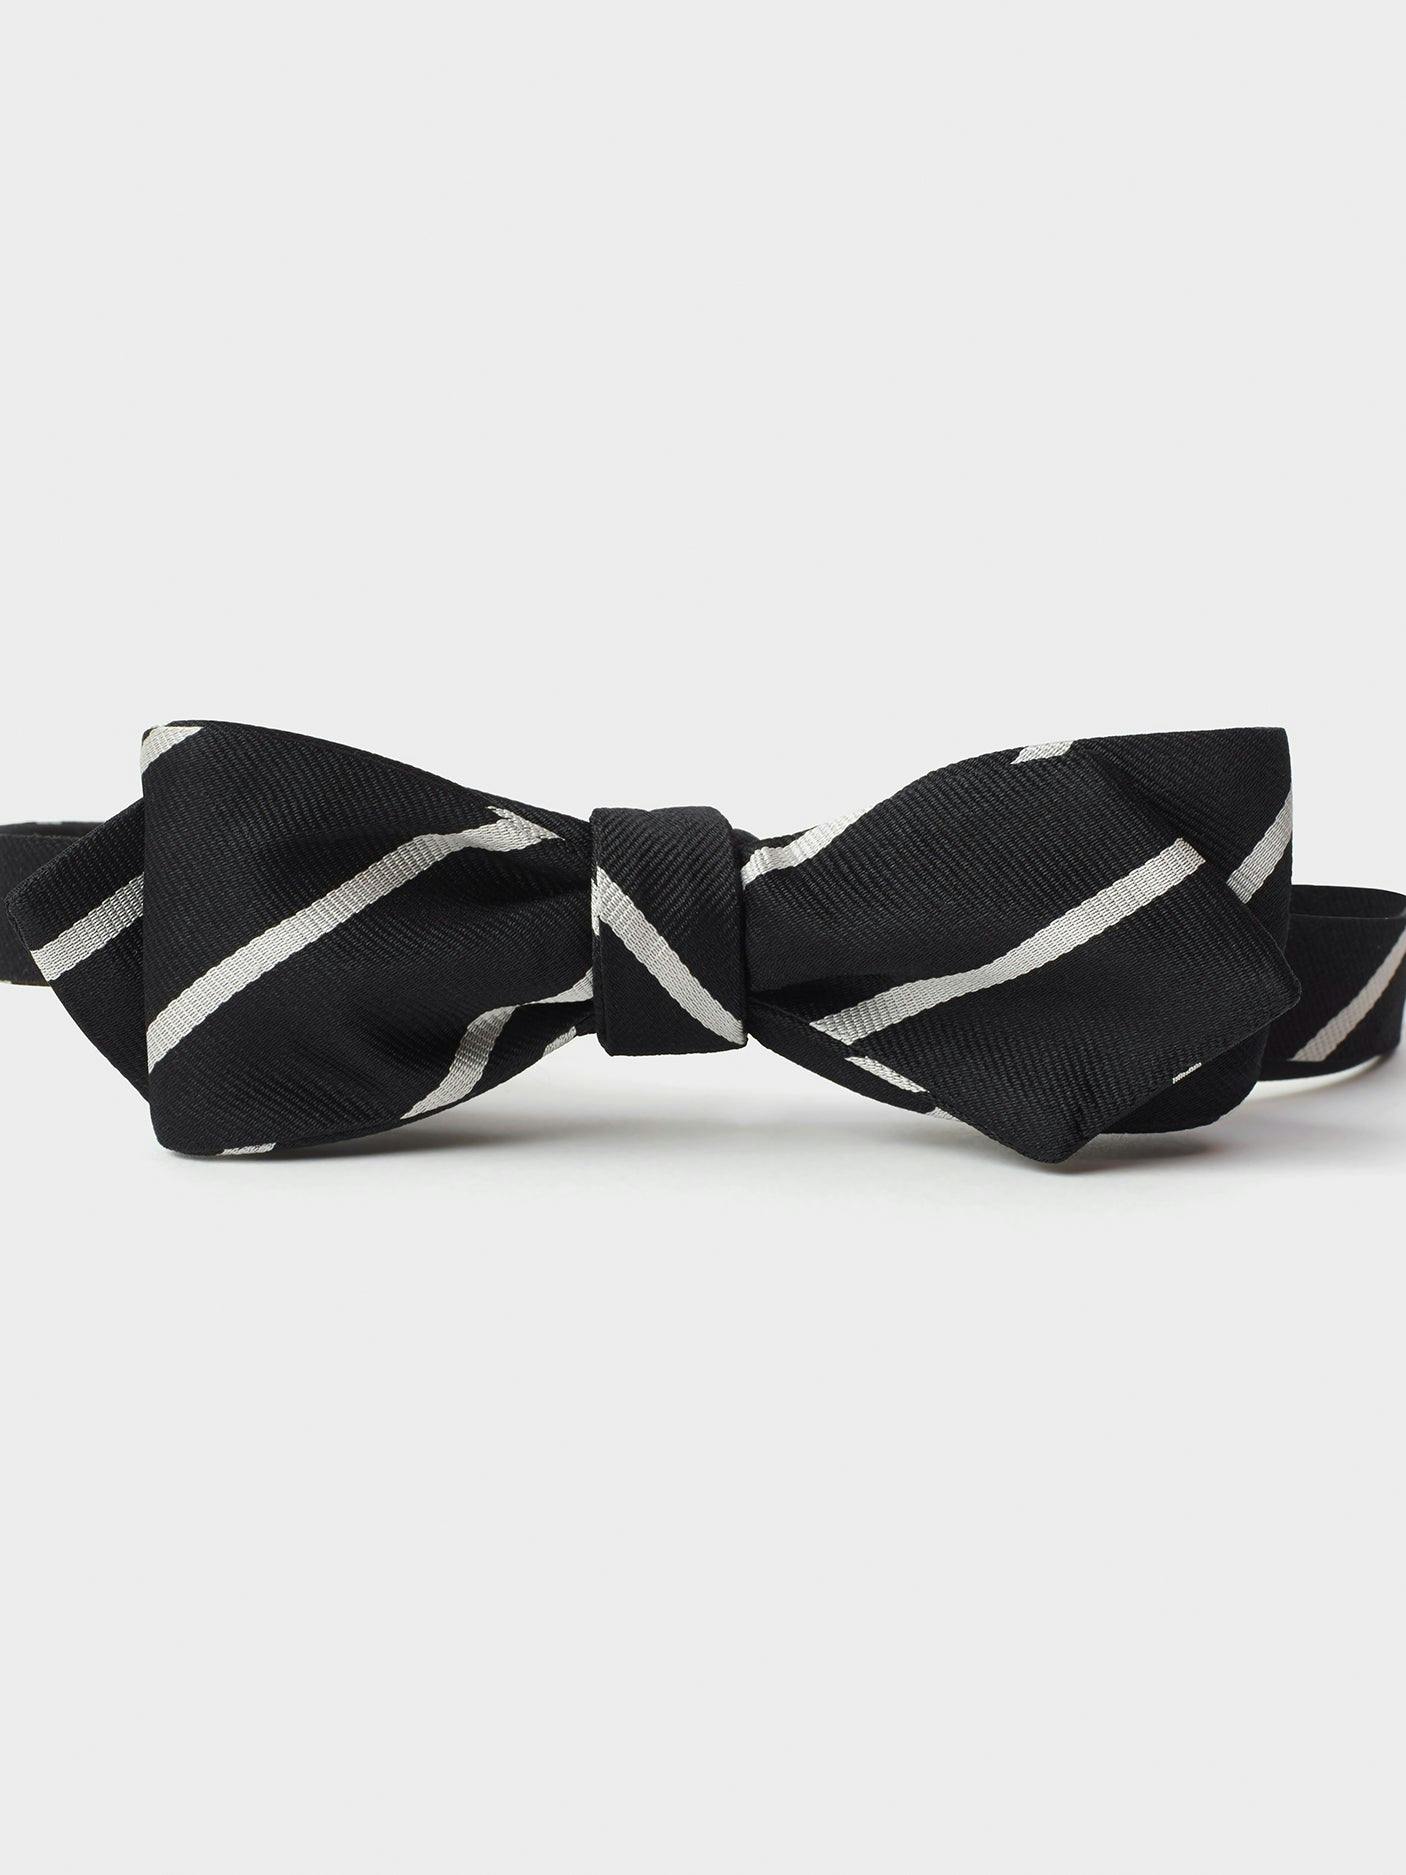 Black & White Silk Repp Bow Tie